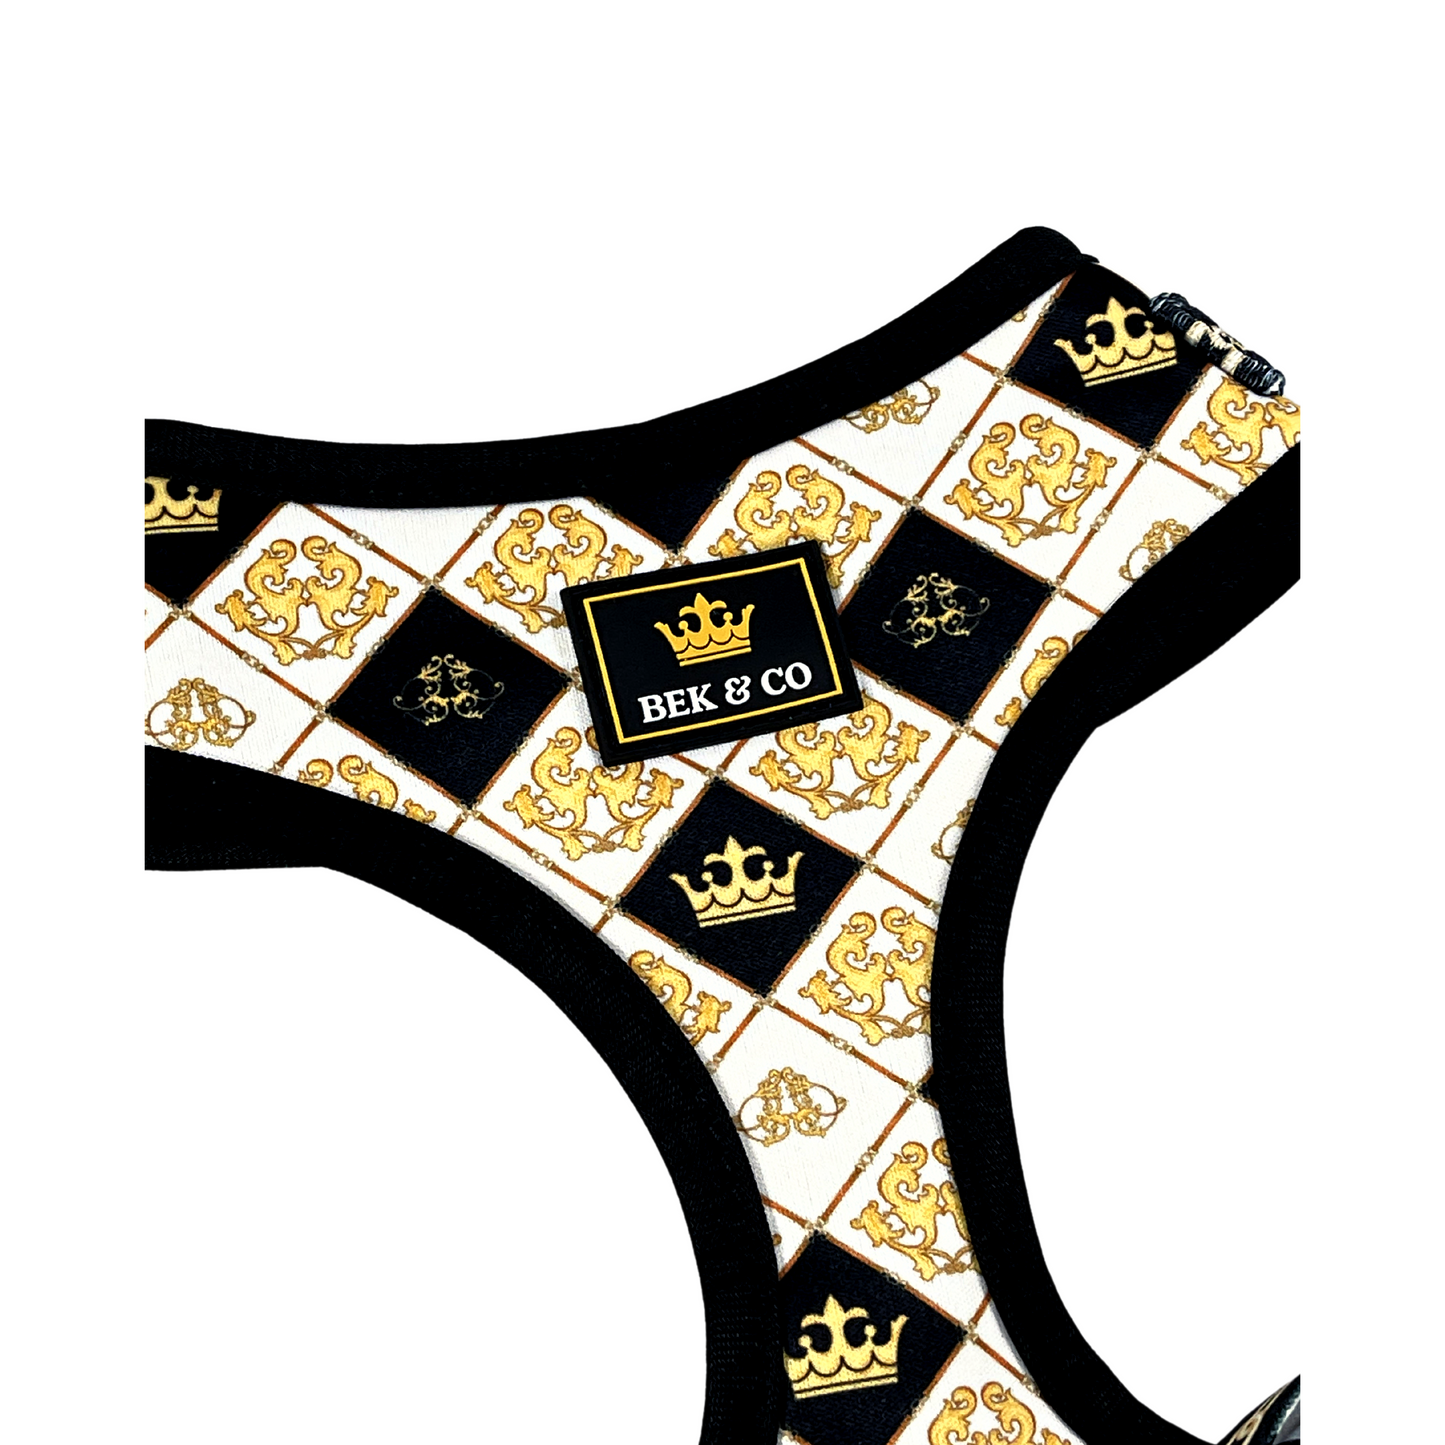 Royal Adjustable French Bulldog Harness close up of logo